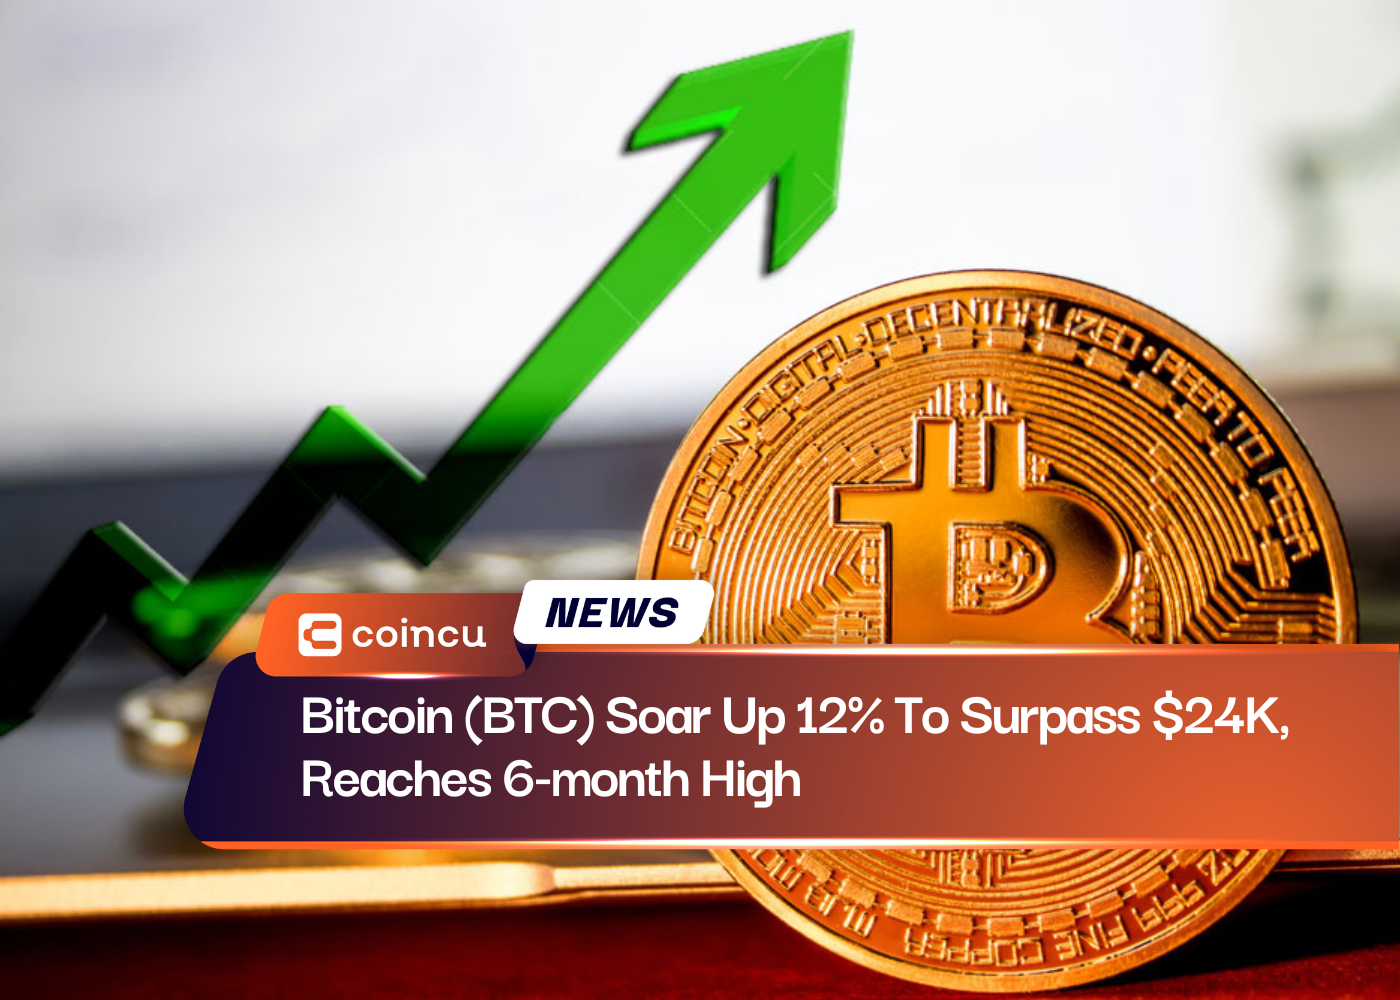 Bitcoin (BTC) Soar Up 12% To Surpass $24K, Reaches 6-month High